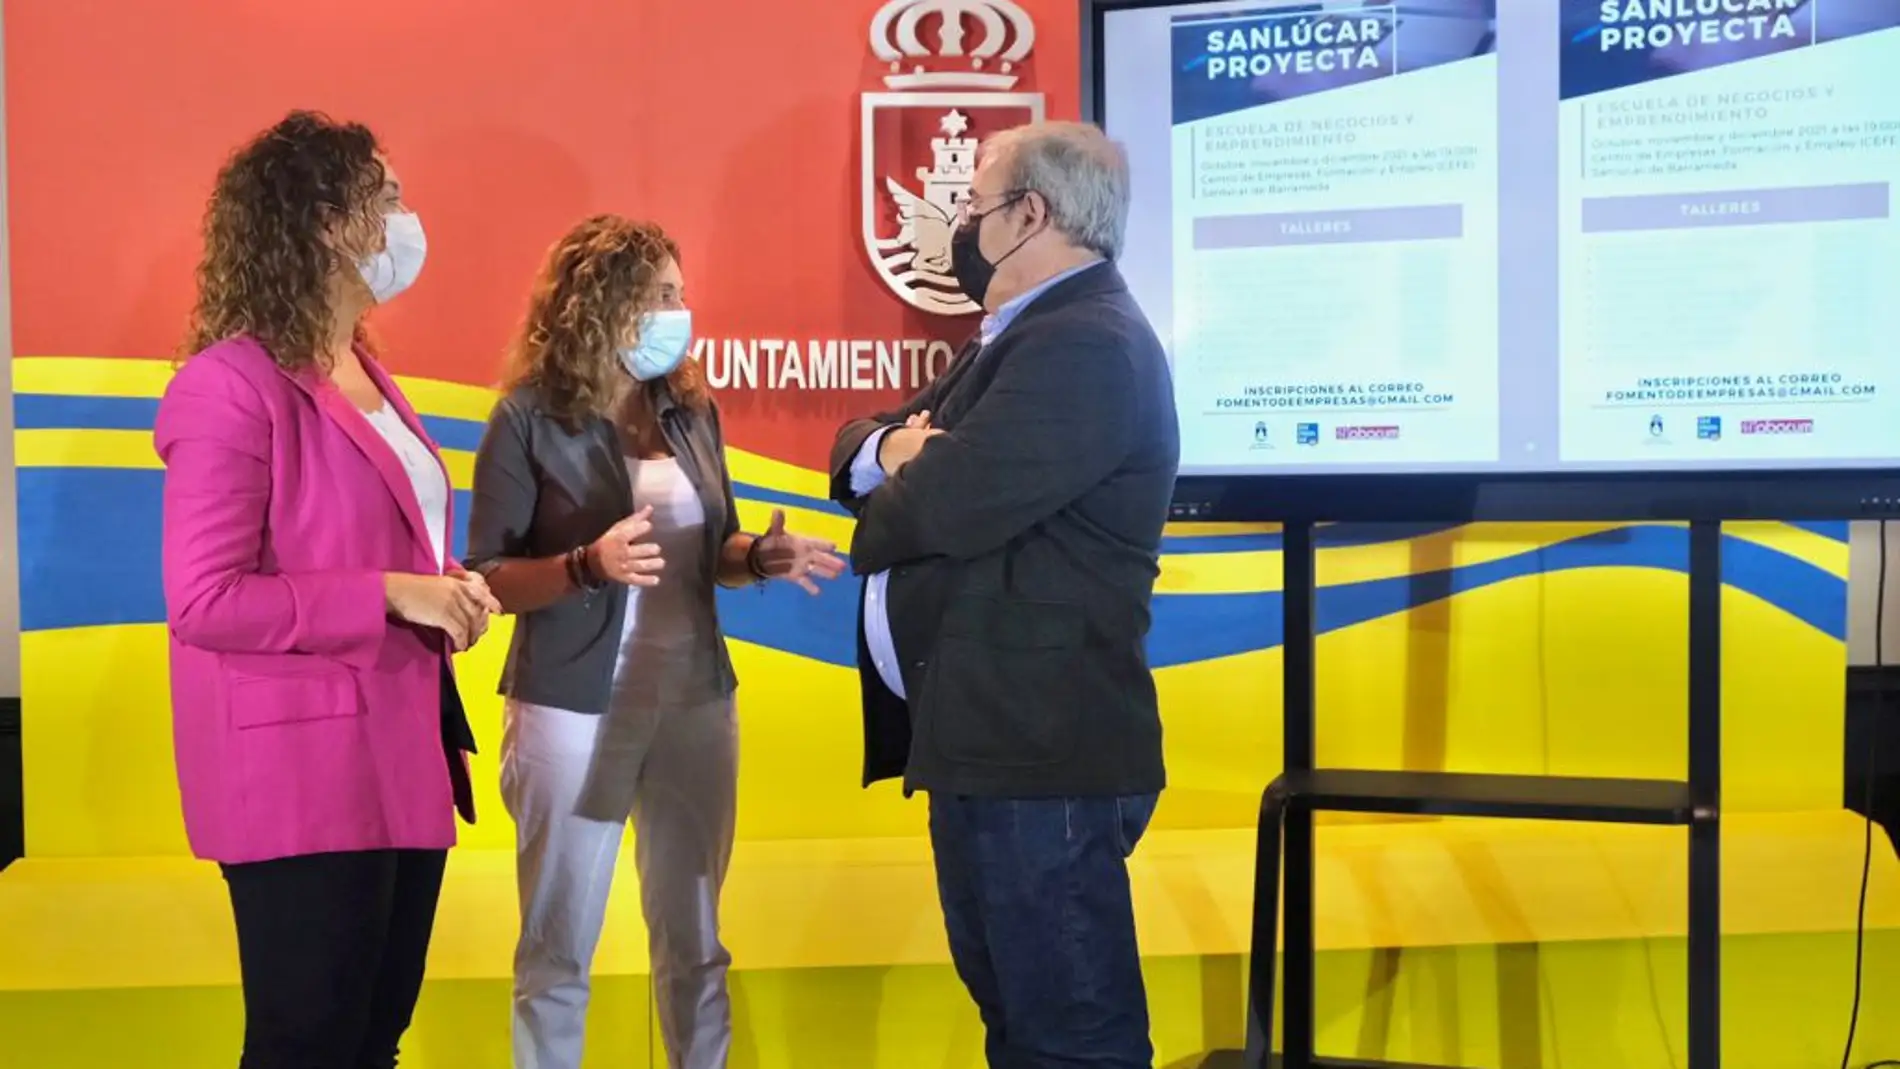 Presentación de la campaña Sanlúcar Proyecta en el Ayuntamiento de Sanlúcar